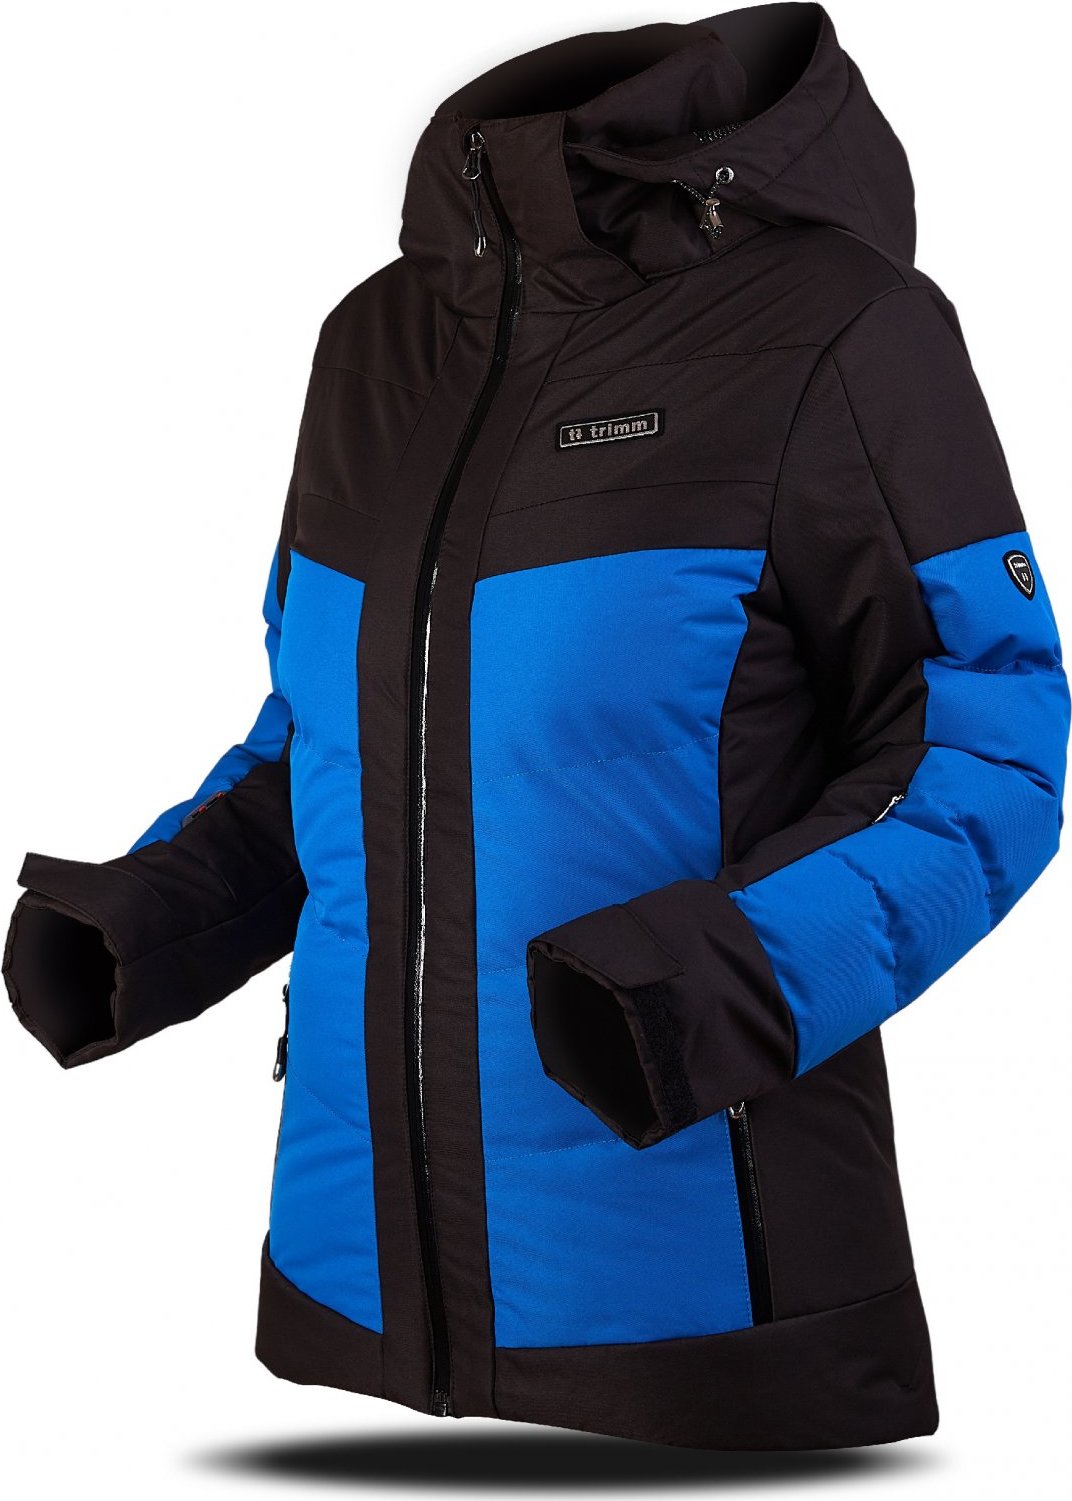 Dámská lyžařská bunda TRIMM Vario Lady modrá/černá Velikost: XL, Barva: jeans blue/ black